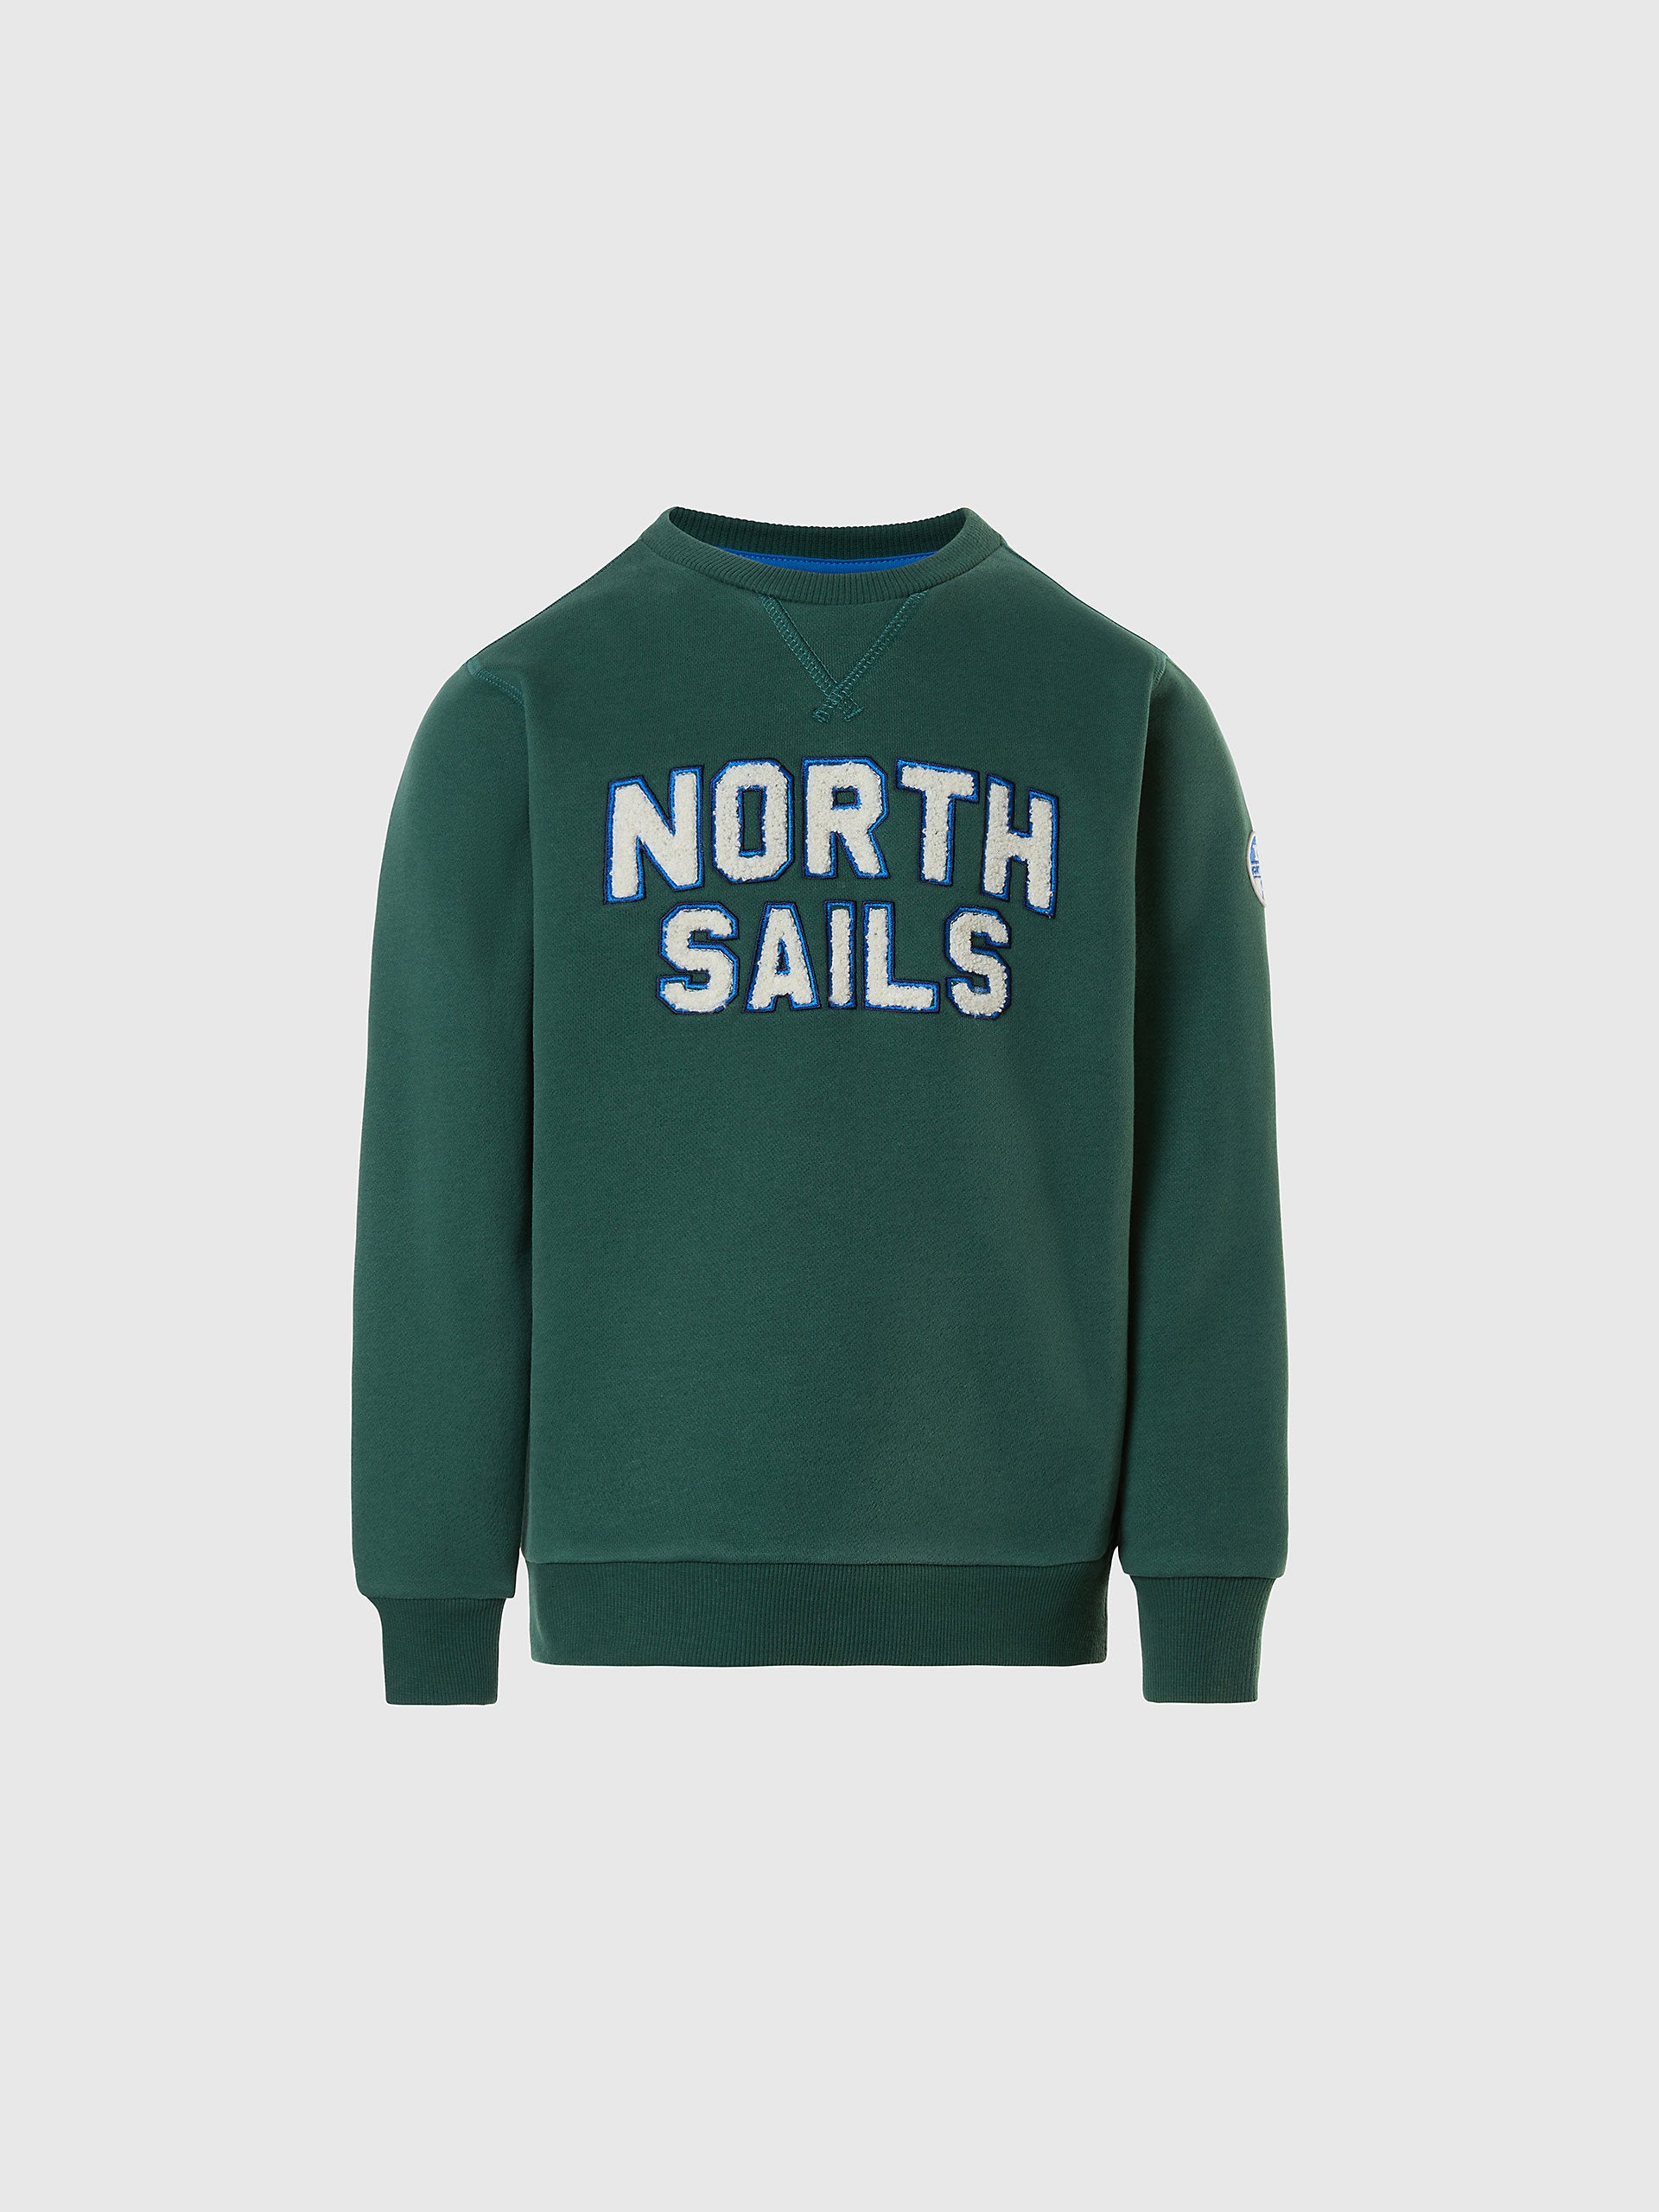 North Sails - Felpa con letteringNorth SailsHunter green12